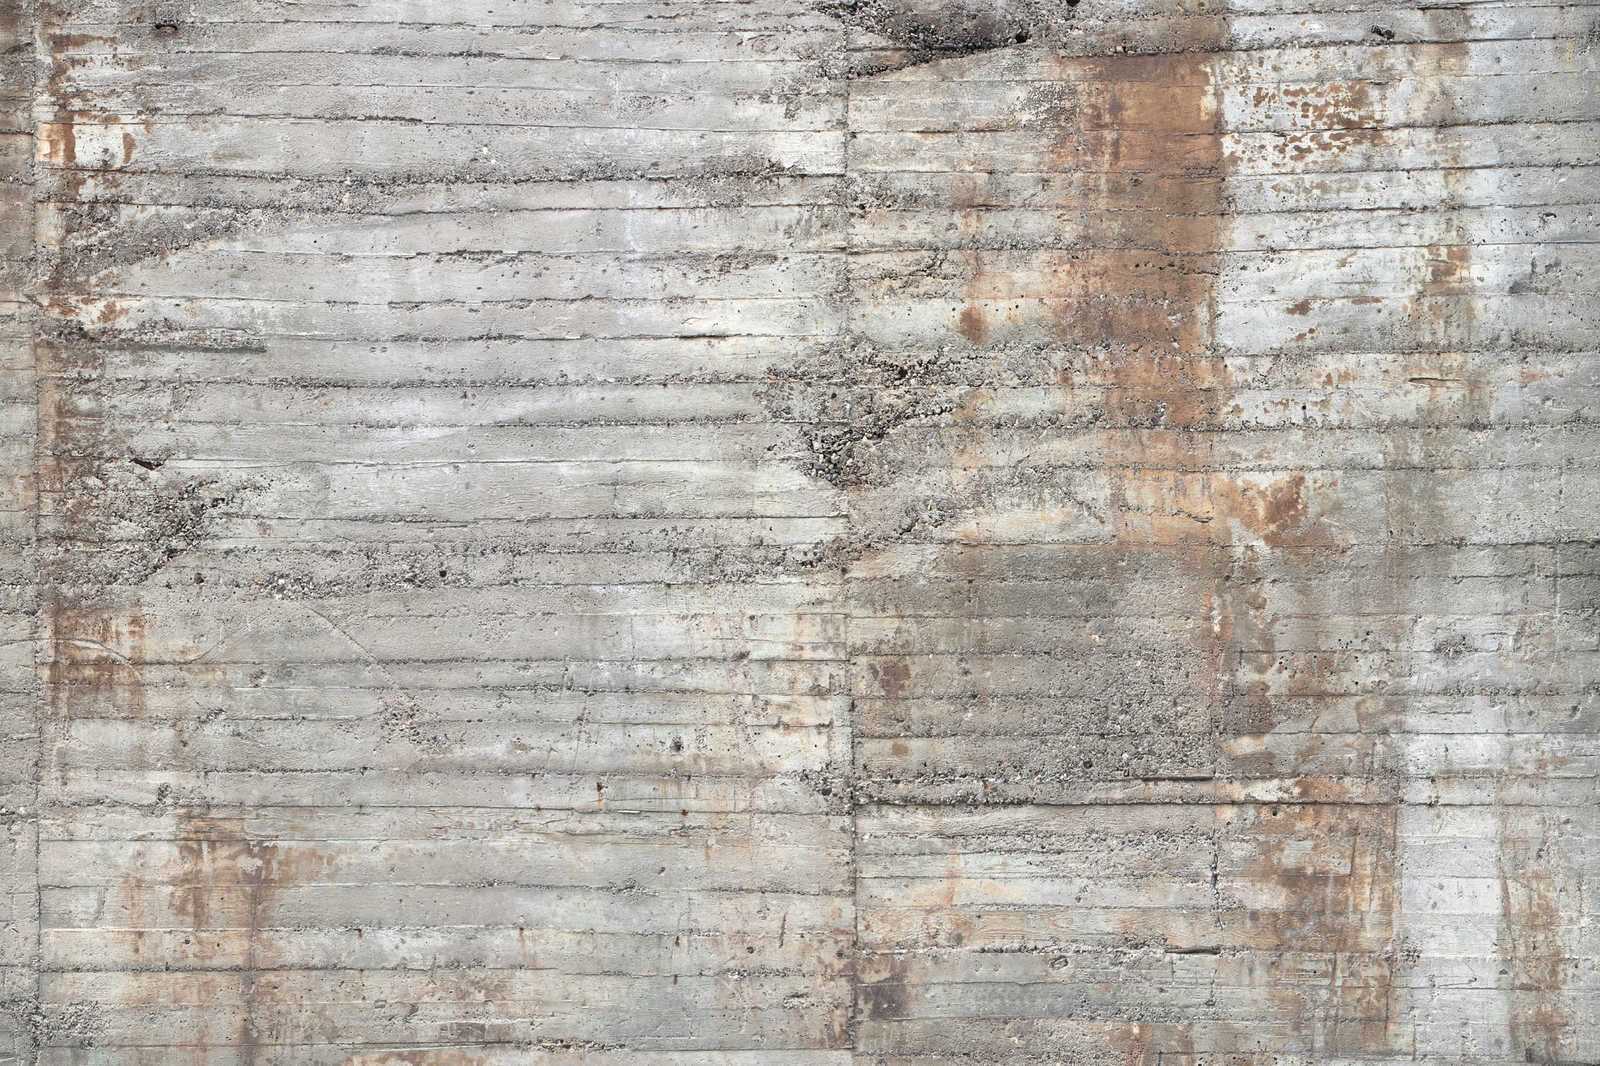             Concrete Canvas Painting Rustic Reinforced Concrete Grey Brown - 0.90 m x 0.60 m
        